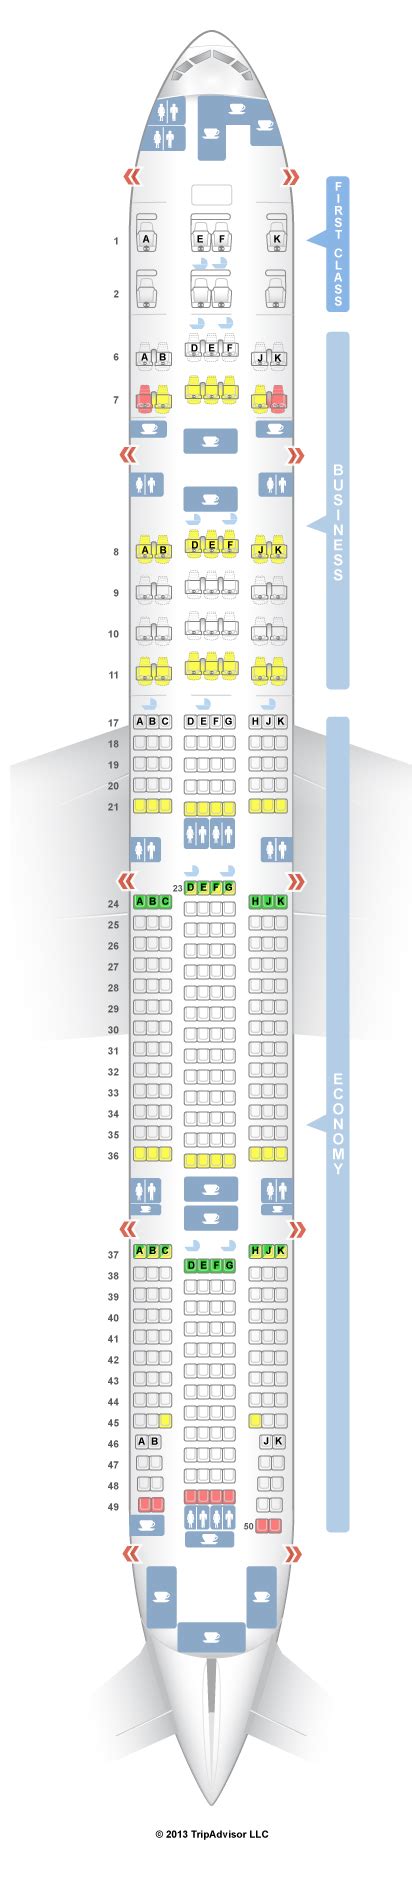 boeing 777-300er emirates seat map